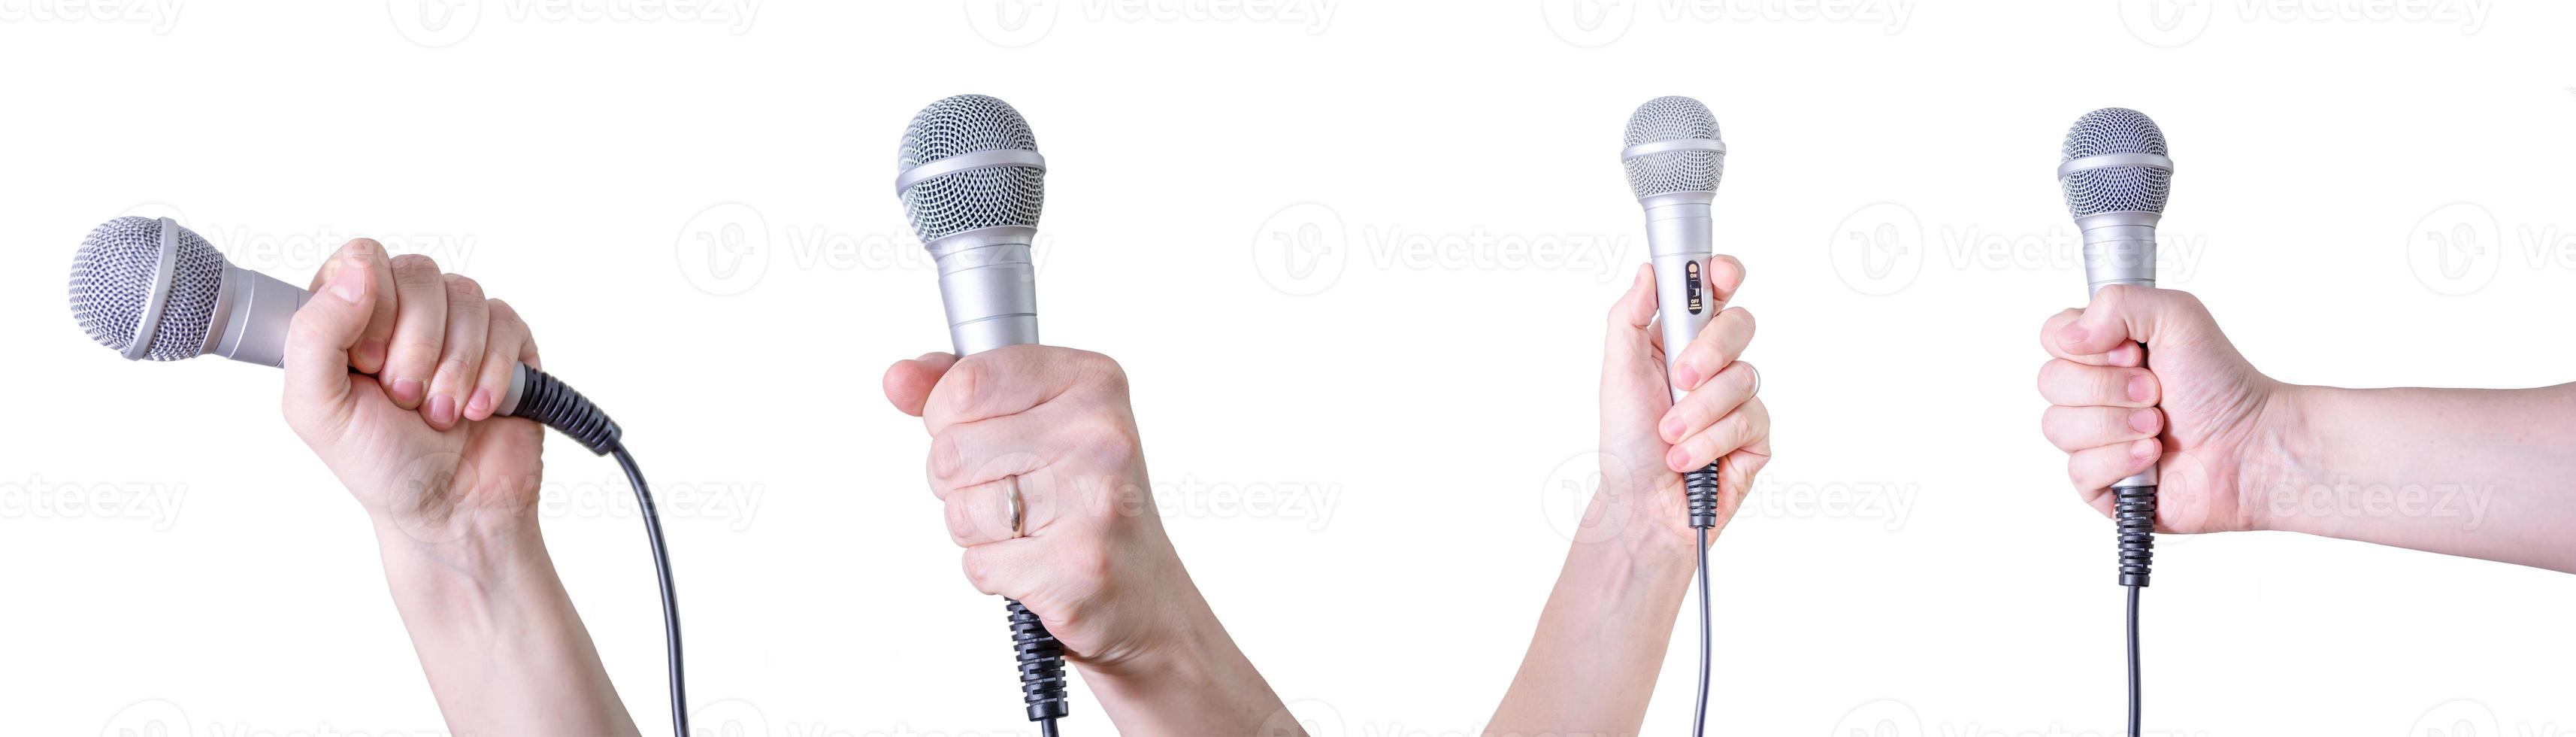 personas con diferentes micrófonos sobre fondo blanco, primer plano foto